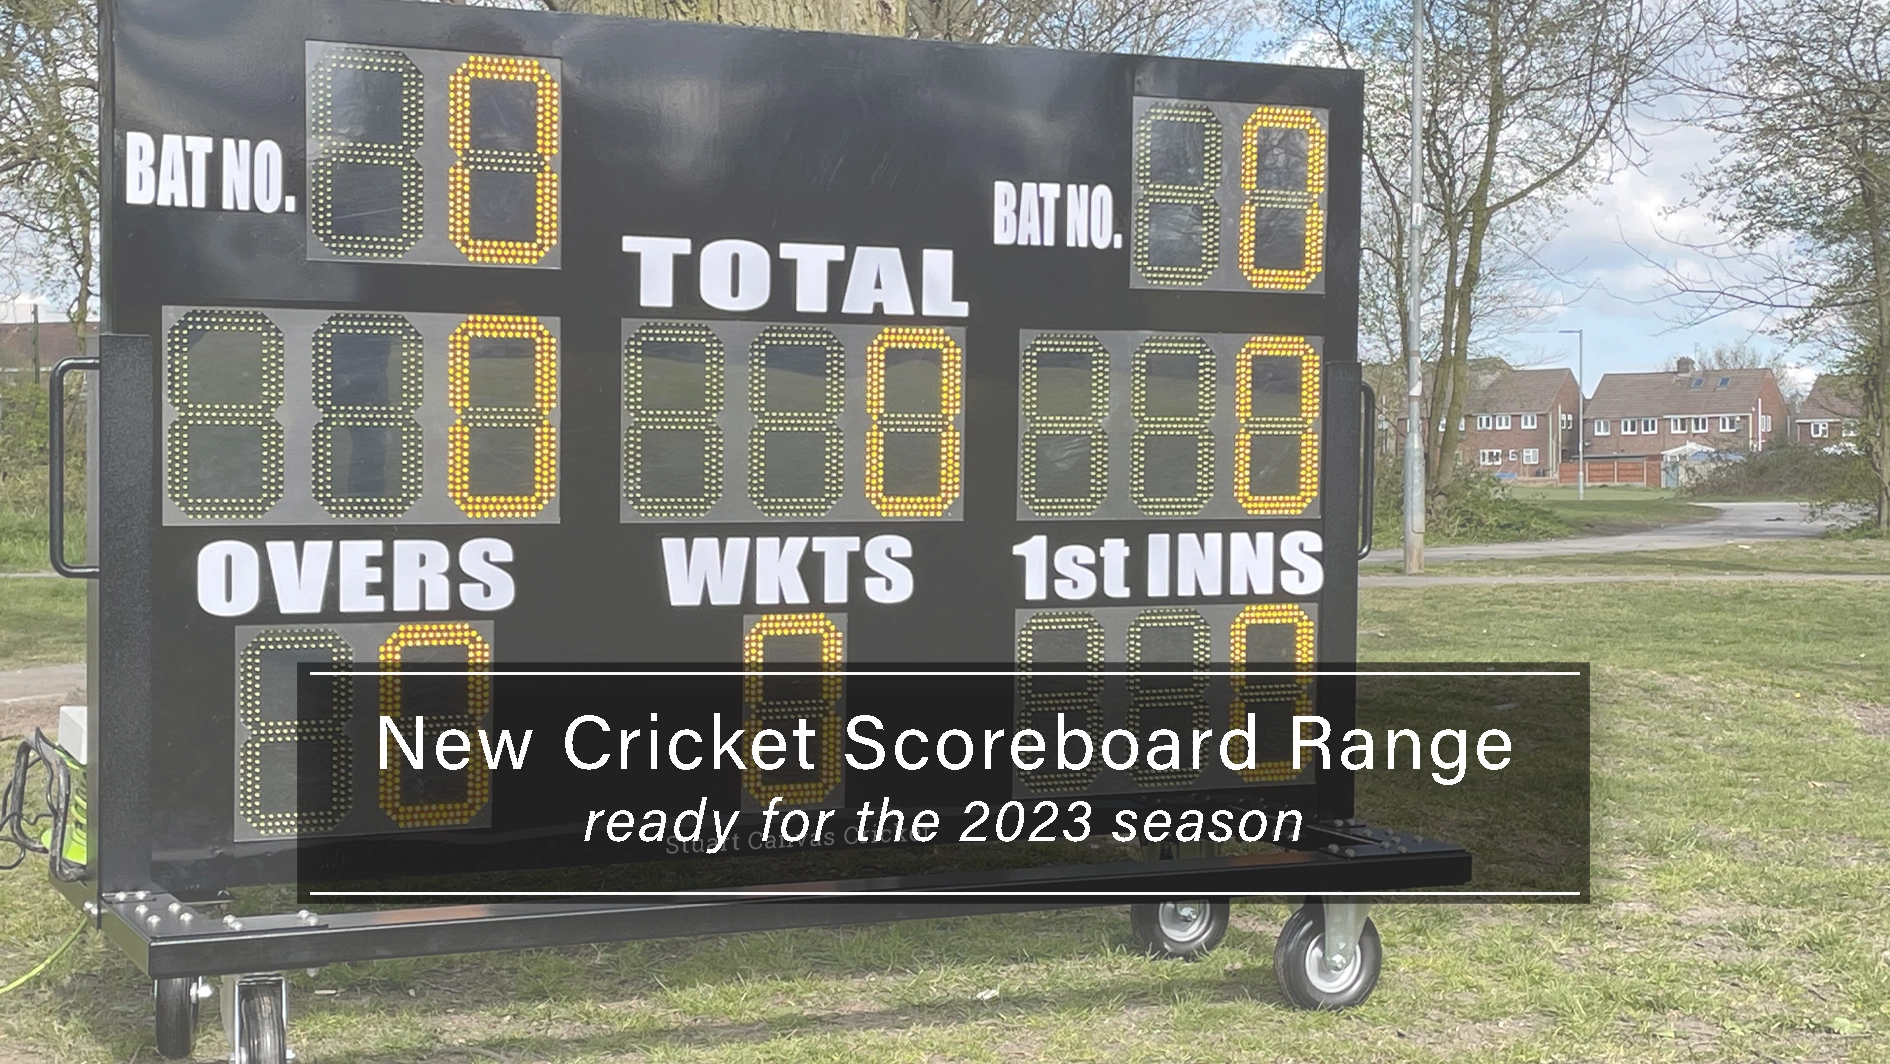 New Cricket Scoreboard Range for 2023